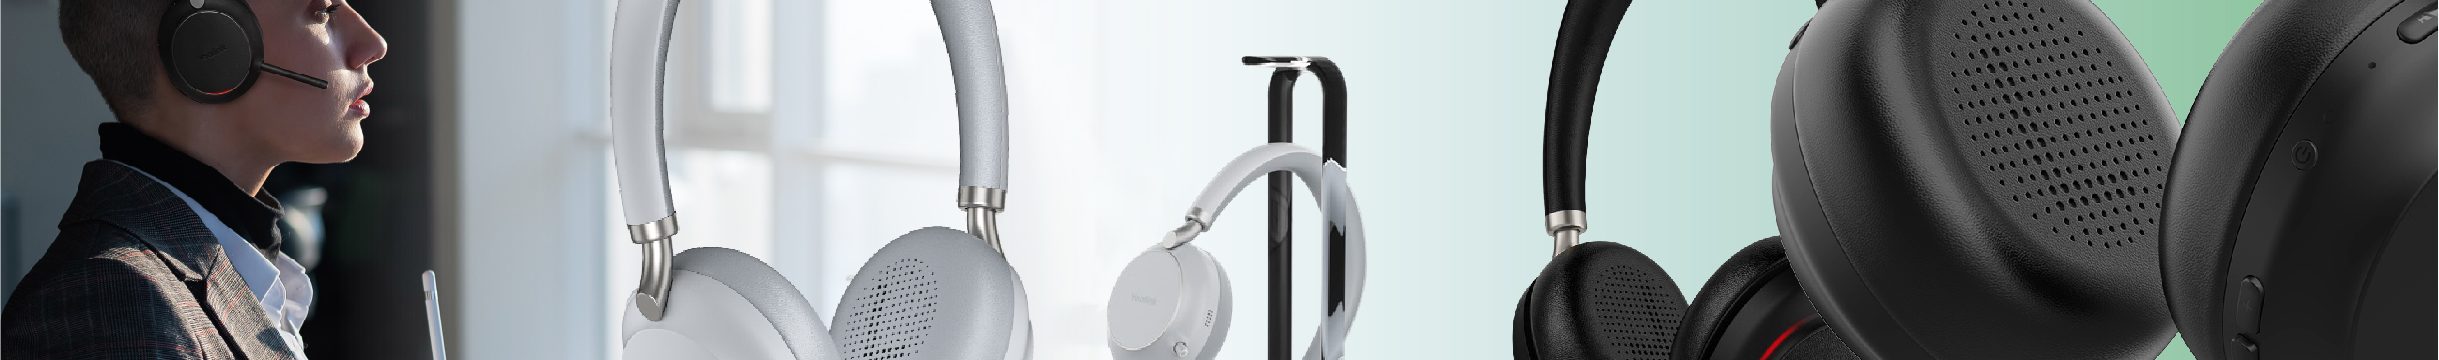 Los nuevos auriculares profesionales de Yealink completamente compatibles con los teléfonos y las soluciones VoIP de Yealink